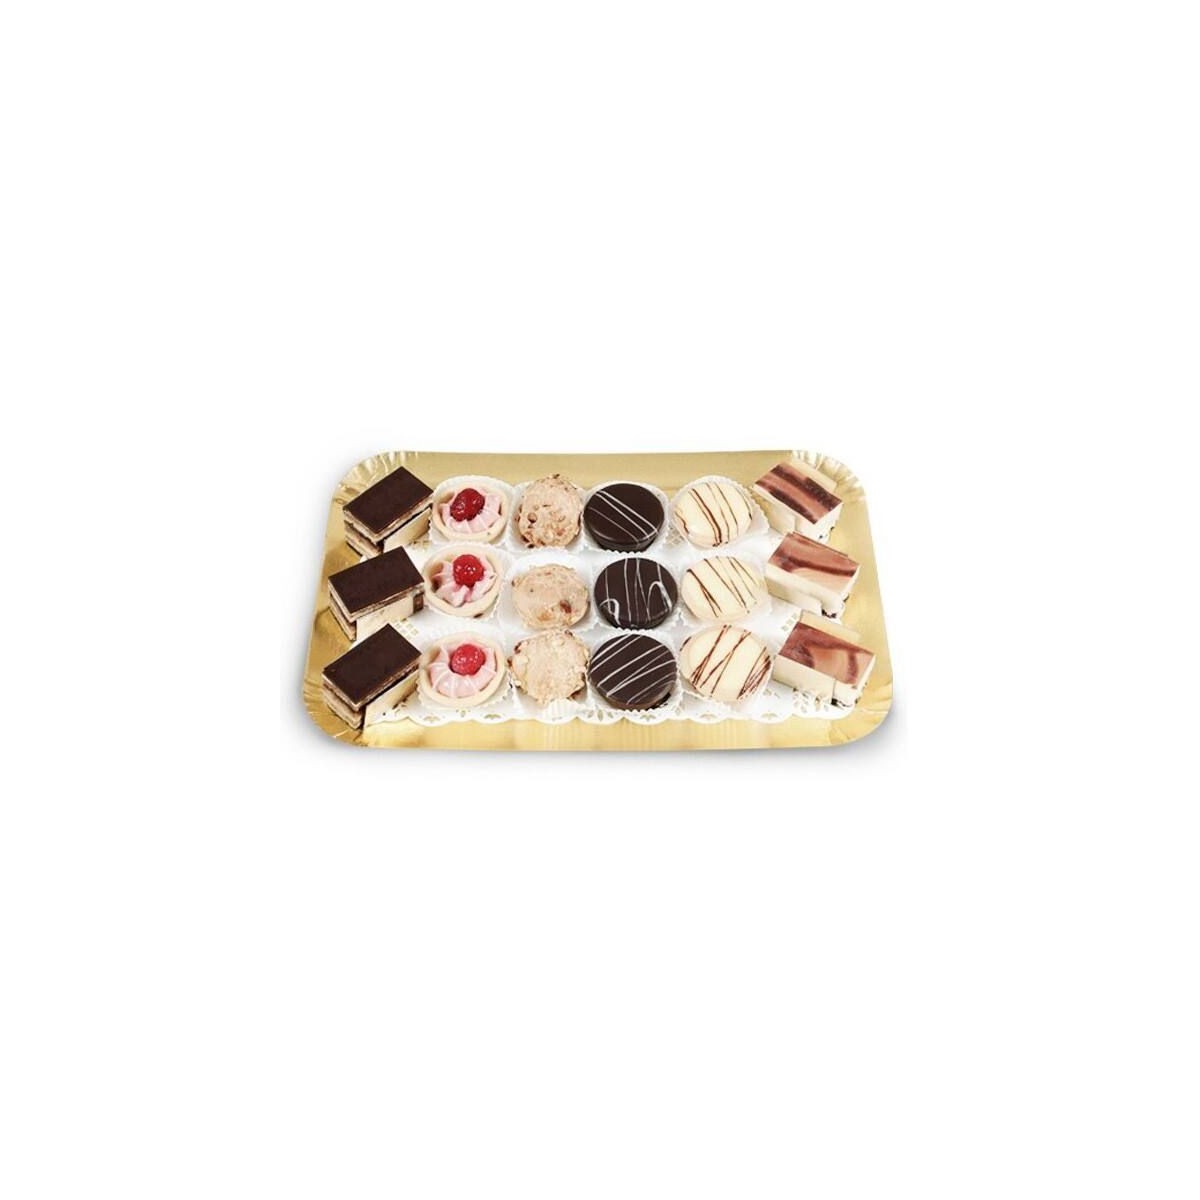 Planche à gâteau ronde réutilisable, base à gâteau, carton, transport de  gâteaux, 30cm, 12 po, paquet